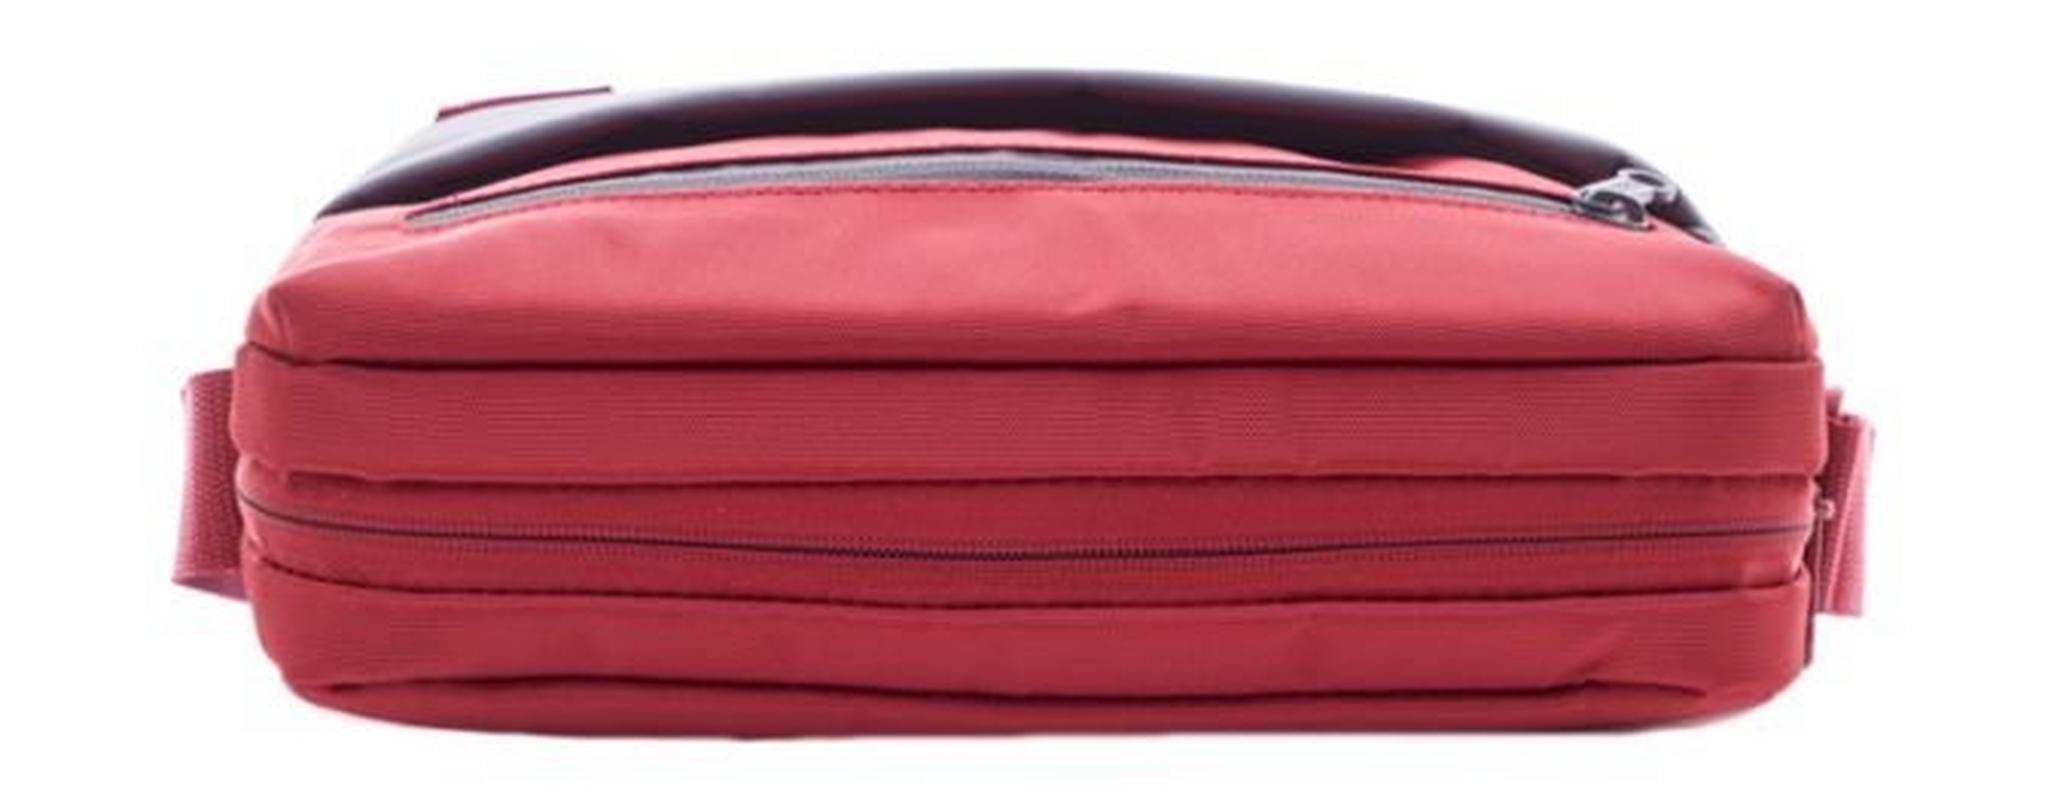 حقيبة كتف أميريكان توريستر بريكستون - أحمر / رمادي (95SX80001)